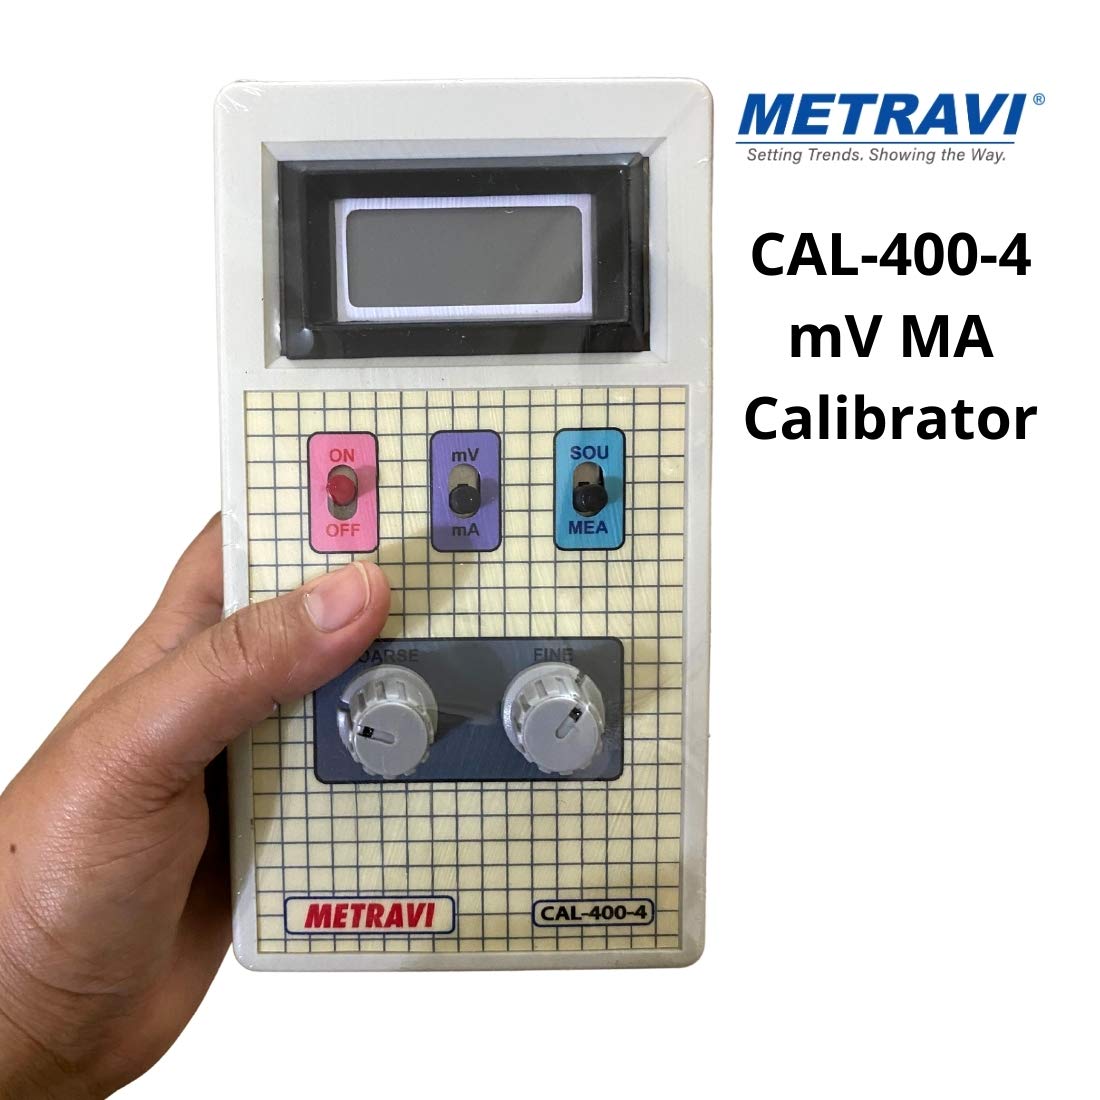 Metravi CAL-400-4 Calibrator